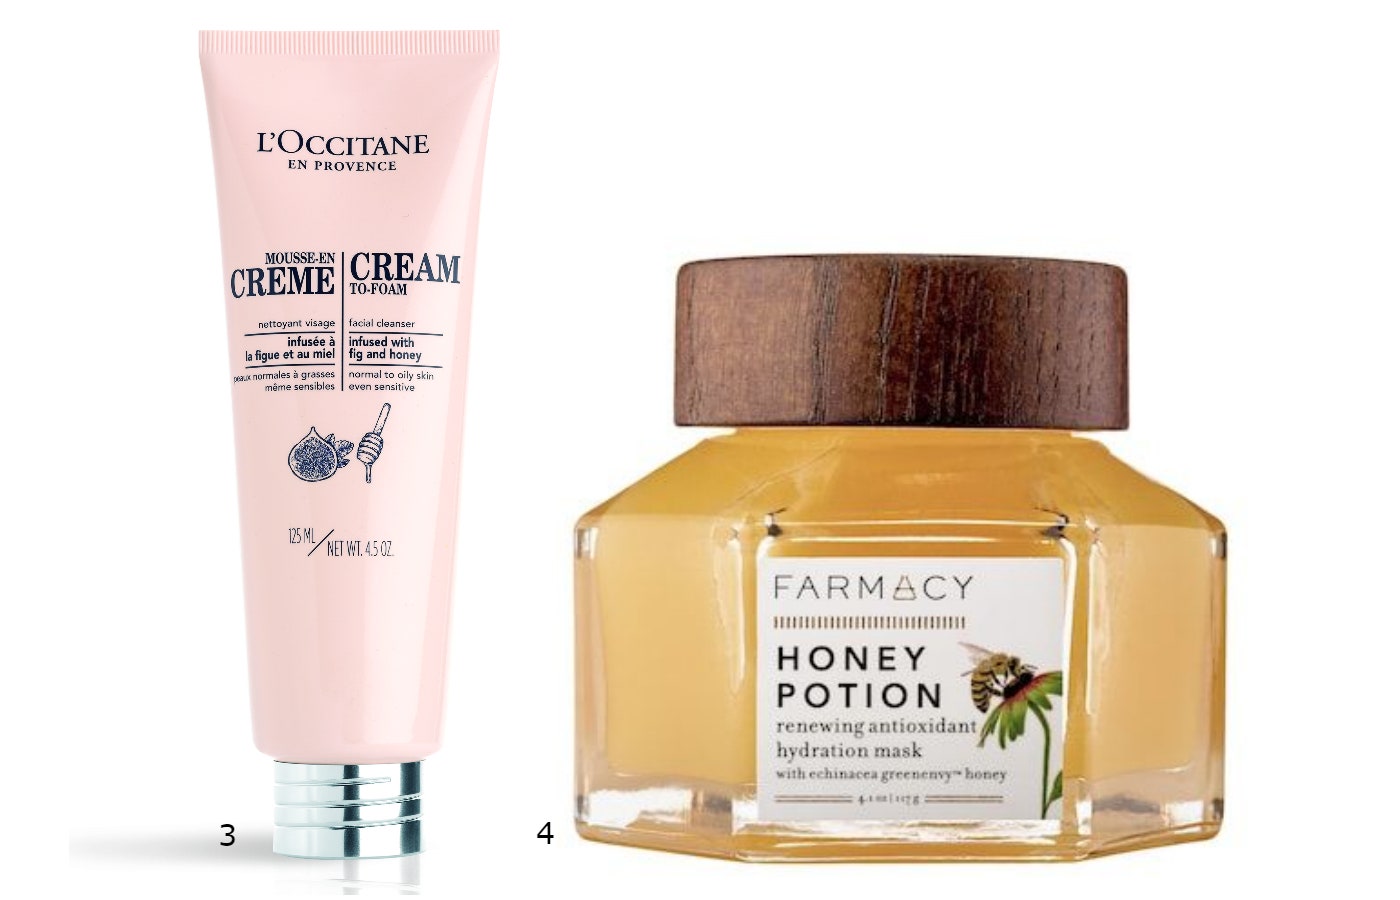 3.Очищающий креммусс для лица с медом и инжиром L'Occitane 4. Farmacy Honey Potion Renewing Antioxidant Hydration Mask